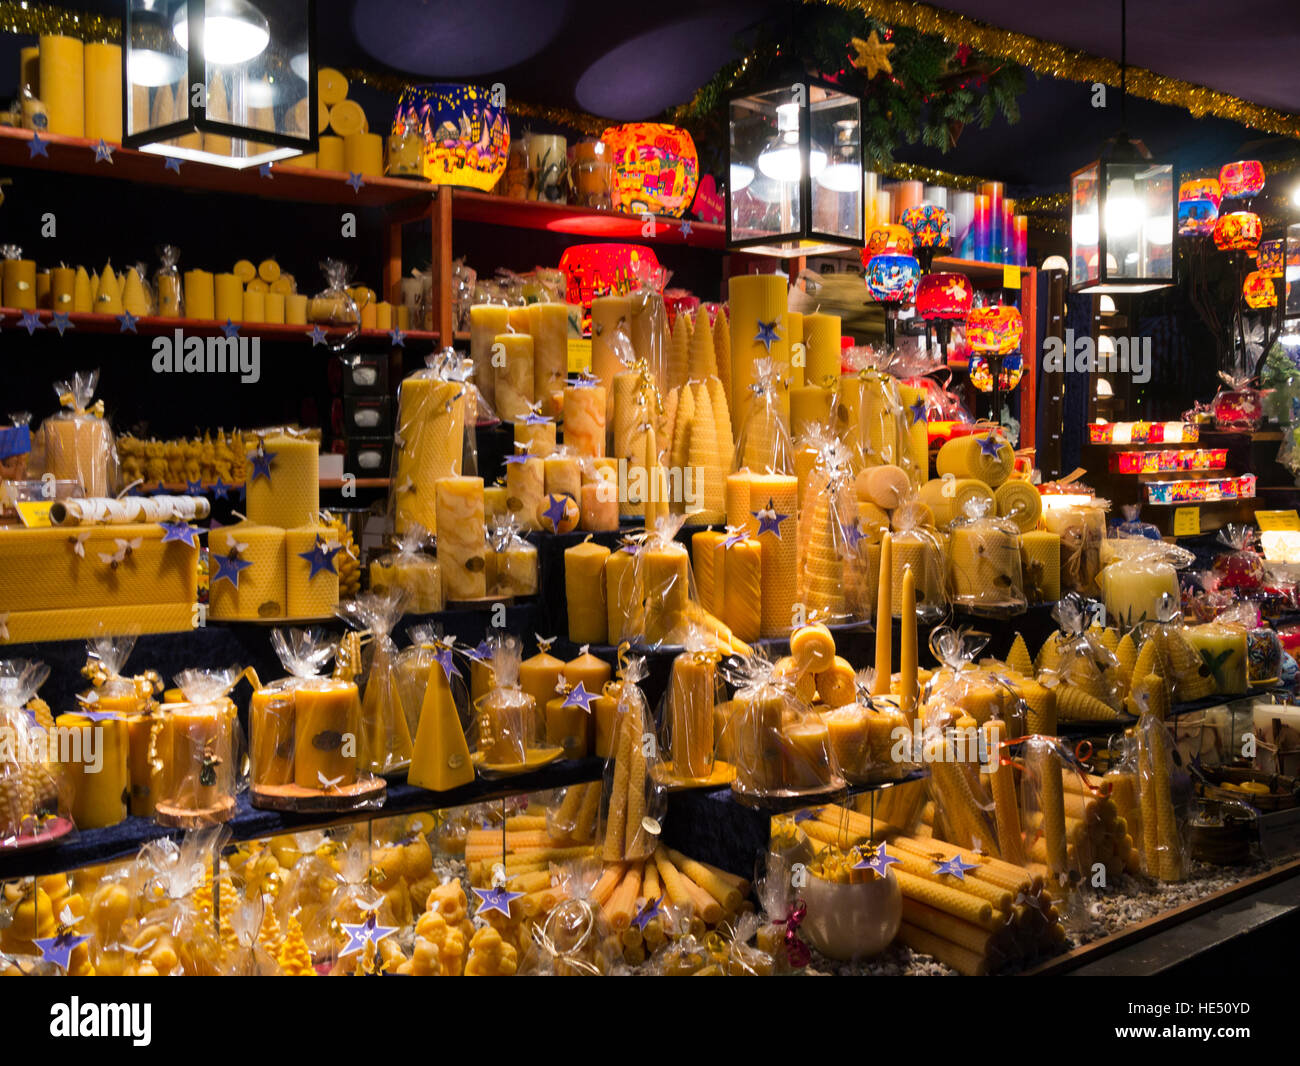 Nürnberg Weihnachtsmarkt stall Verkauf von Kerzen aus Bienenwachs Bayern  Deutschland EU Stockfotografie - Alamy